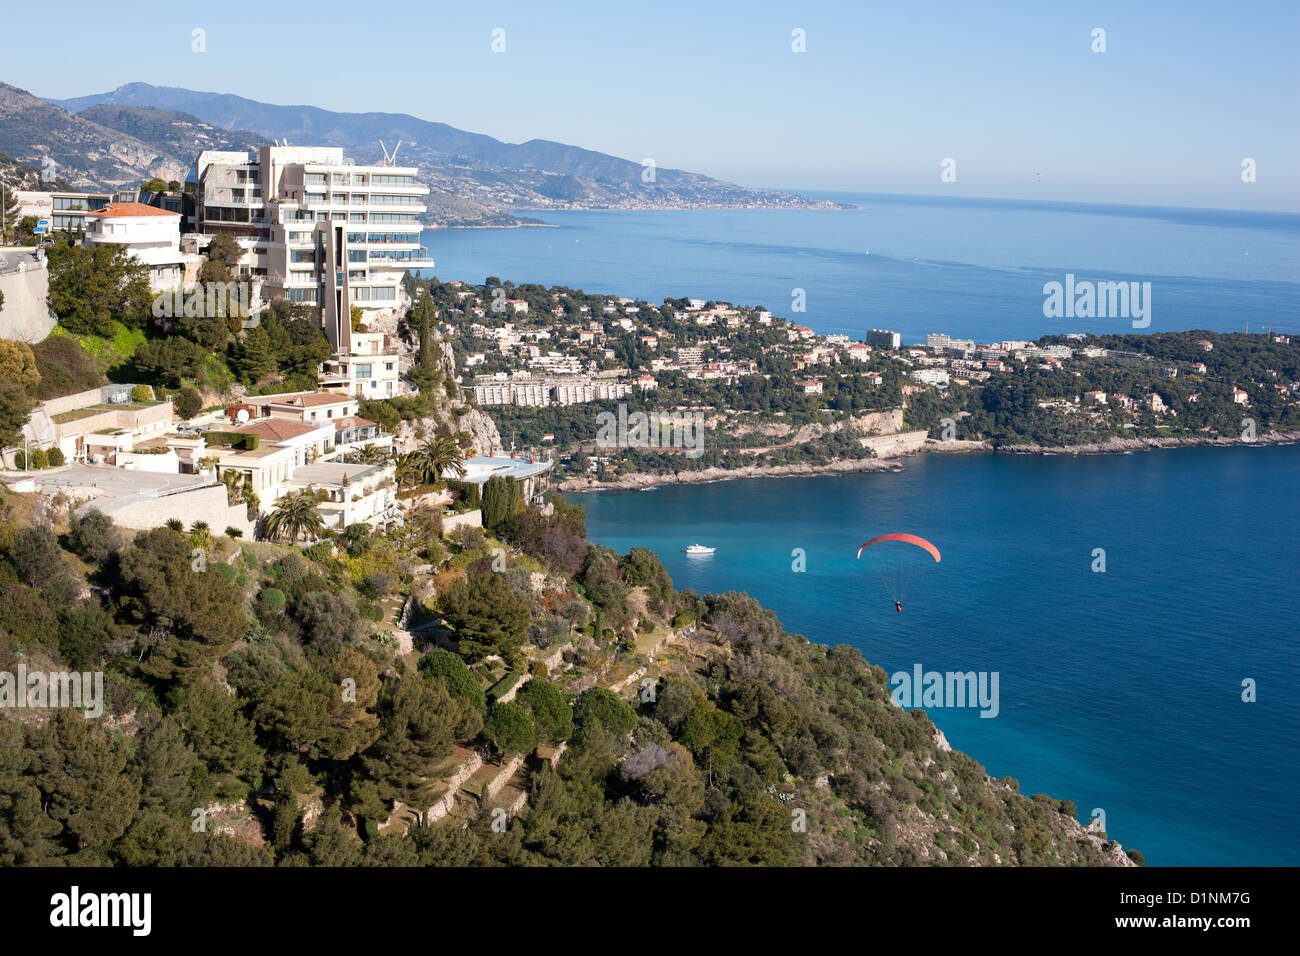 VISTA AÉREA. Vista Palace Hotel con sus impresionantes vistas al mar Mediterráneo. Roquebrune-Cap-Martin, Riviera Francesa, Francia. Foto de stock